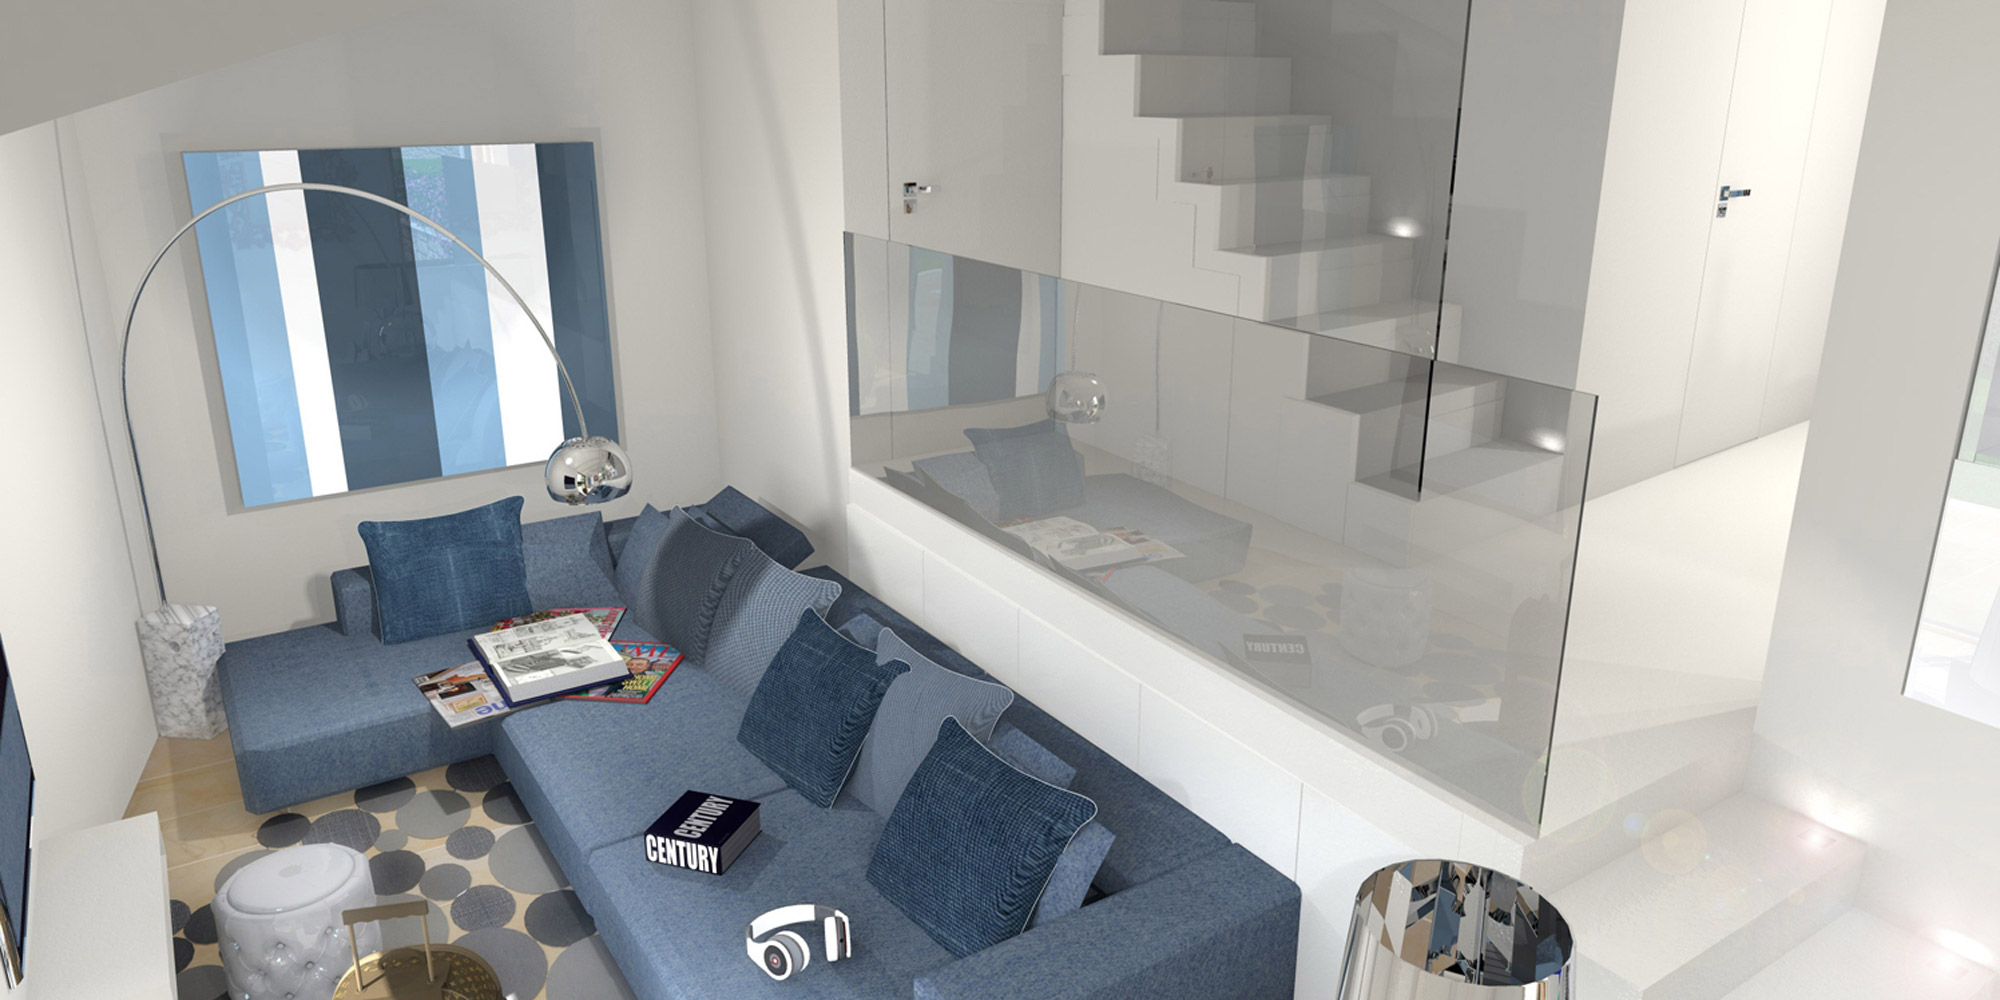 Private Residence in La Spezia - Interior Design - Marco Bonfigli Architect